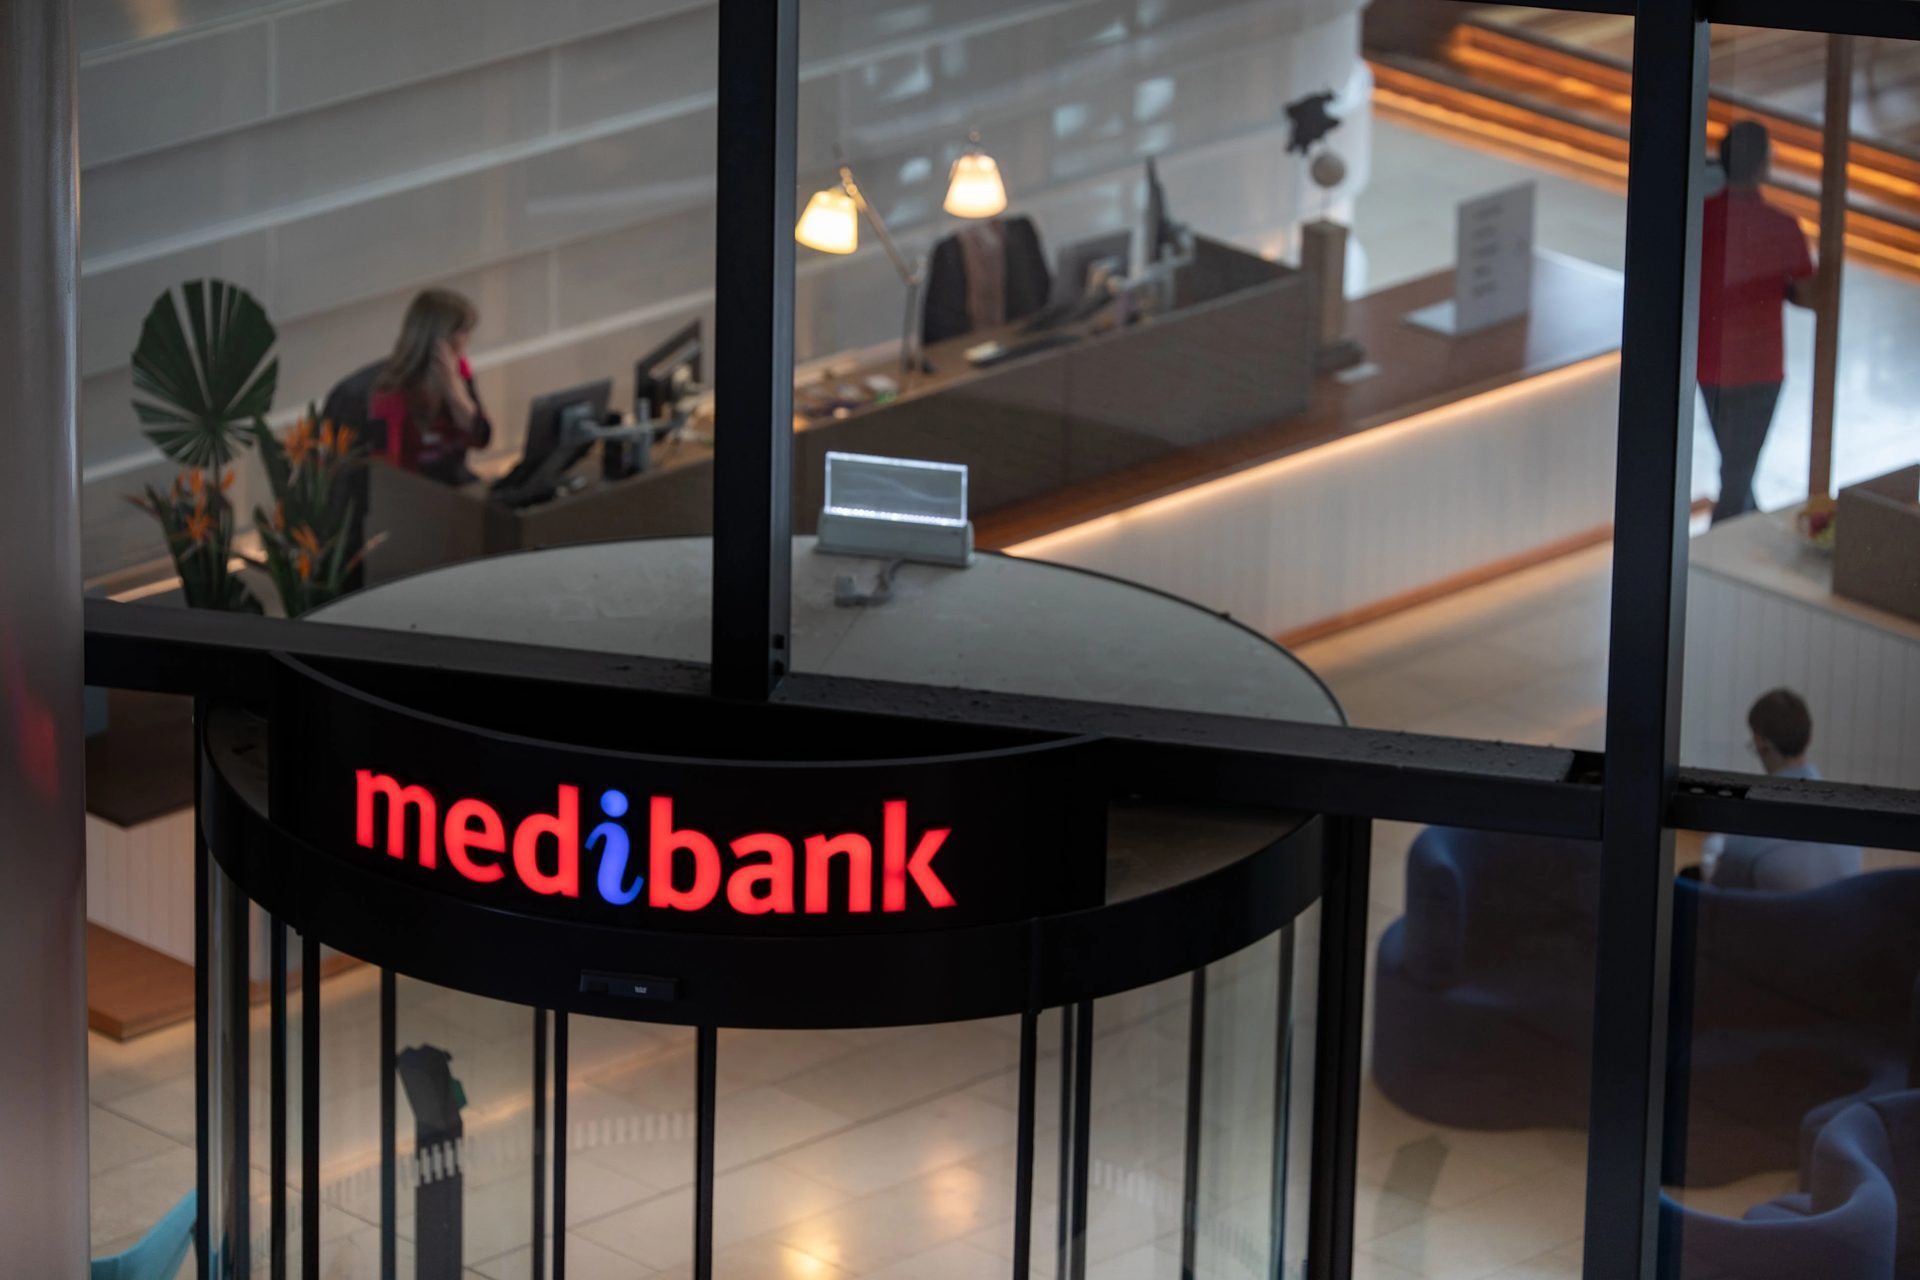 Vụ kiện tập thể vi phạm dữ liệu Medibank: Khoản bồi thường có thể lên tới 20,000 đô la mỗi người